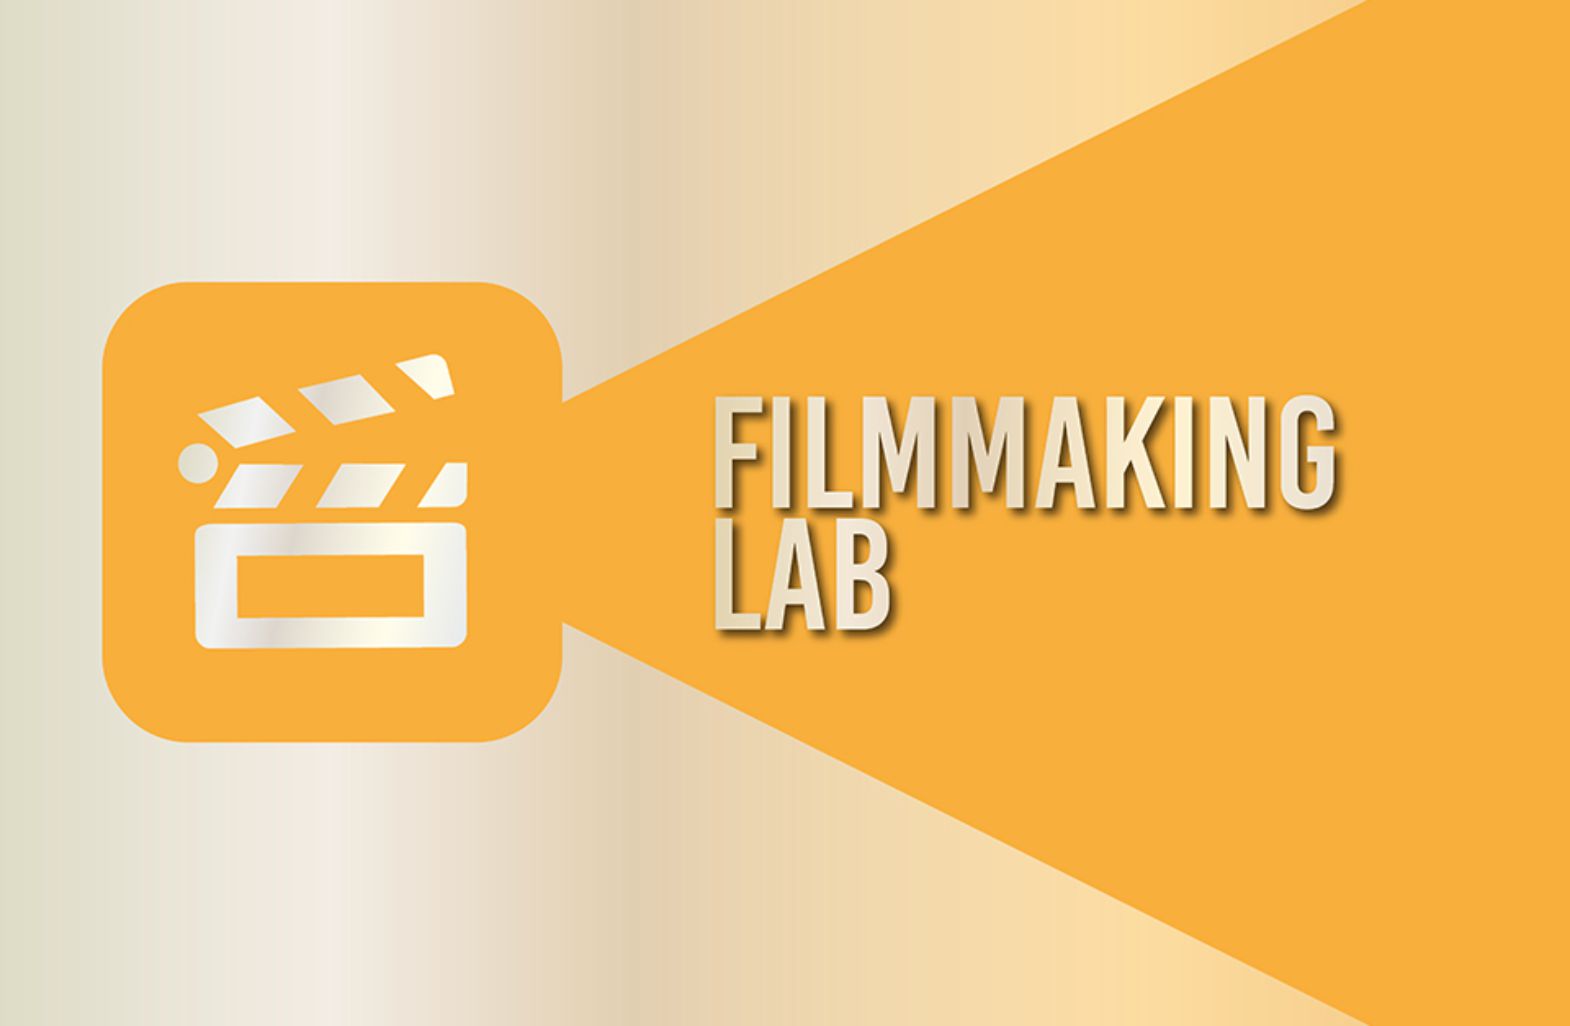 Filmmaking Lab wide